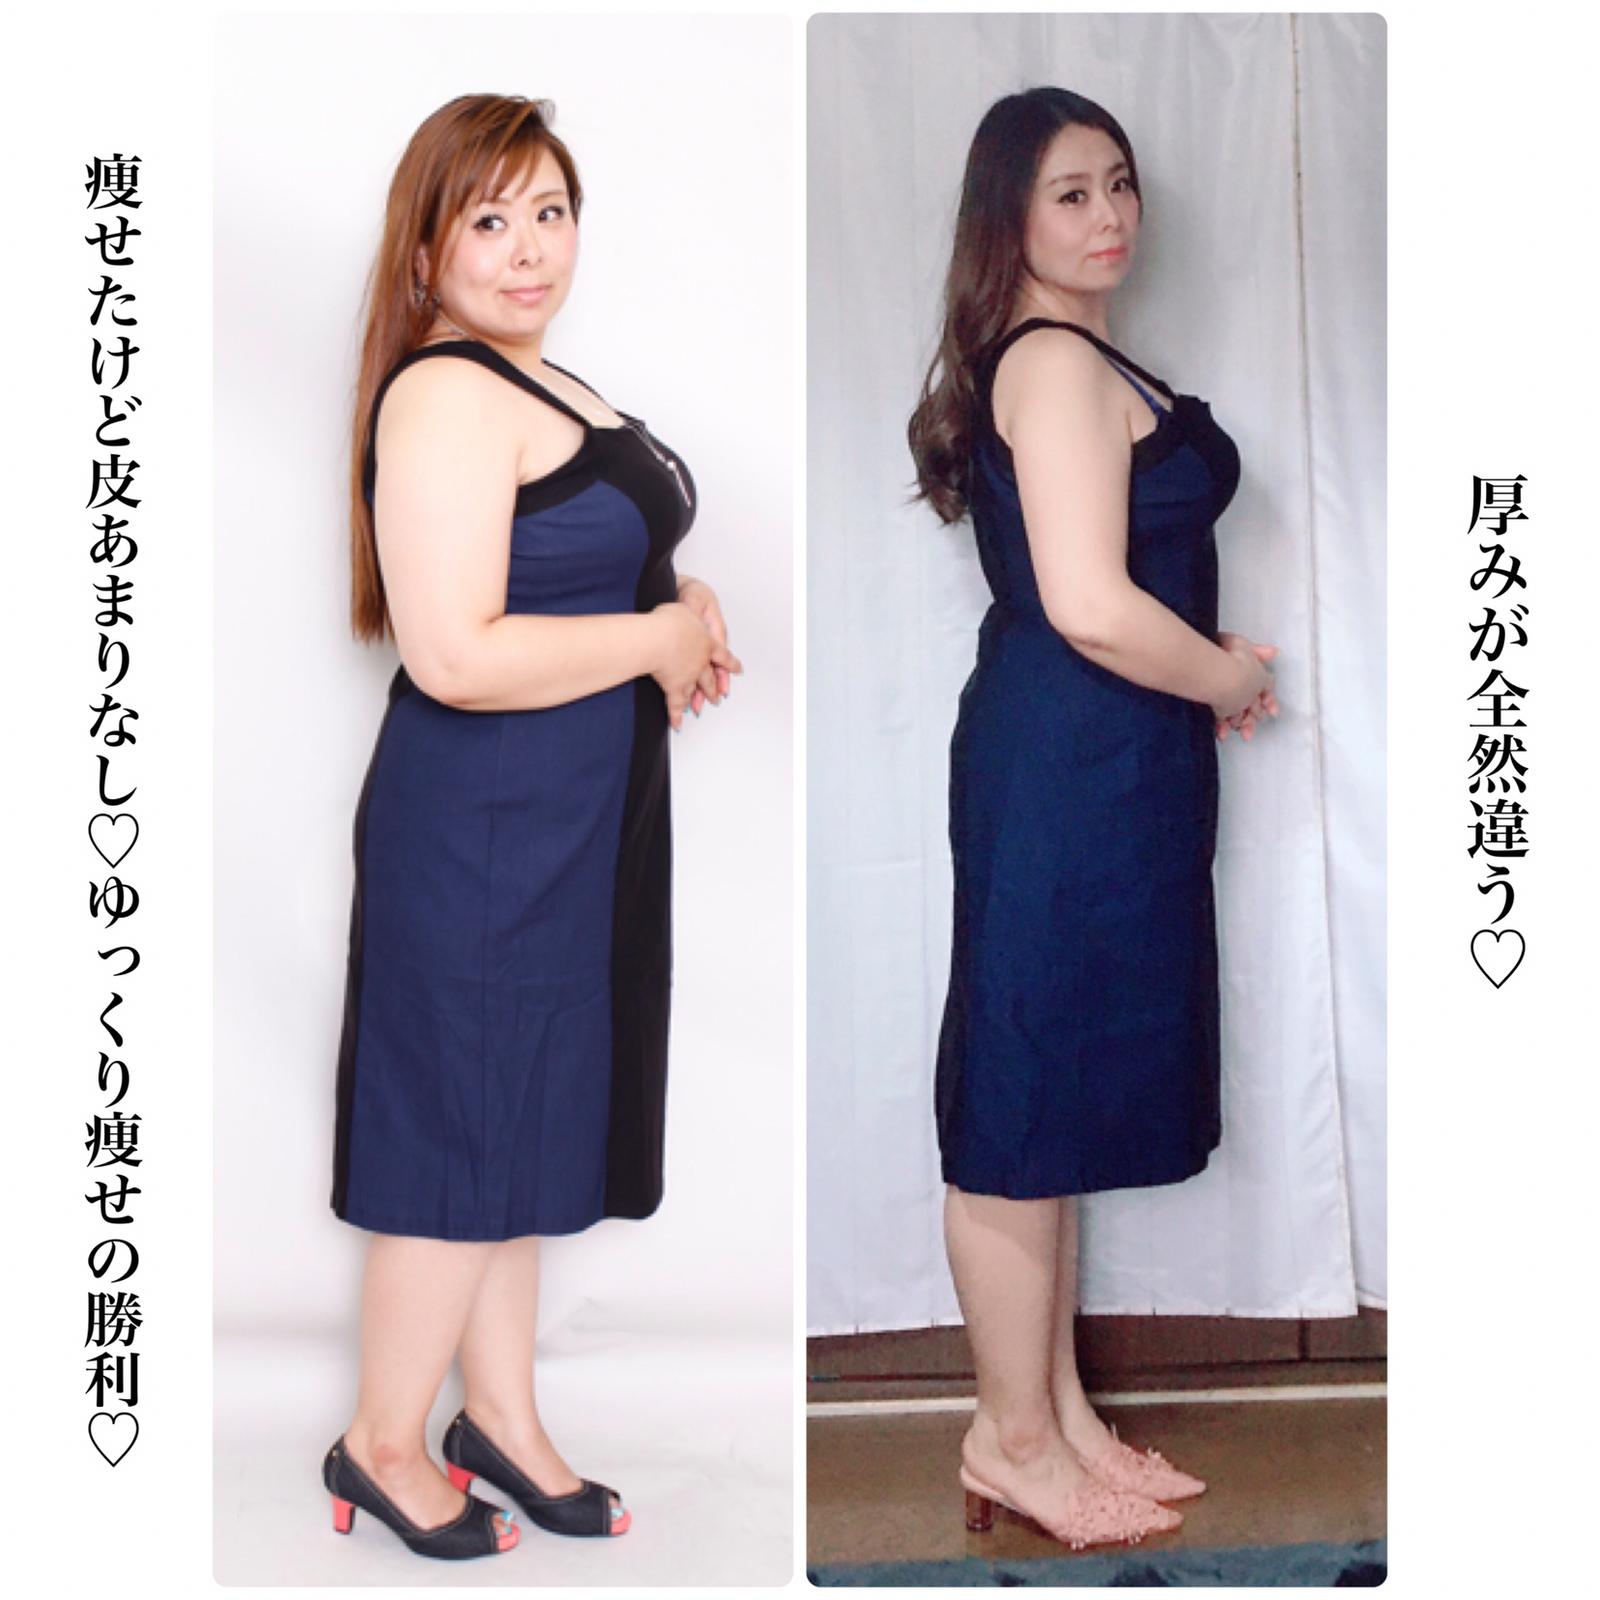 25キロ痩せたら見た目はここまで変わる Merisaが投稿したフォトブック Sharee